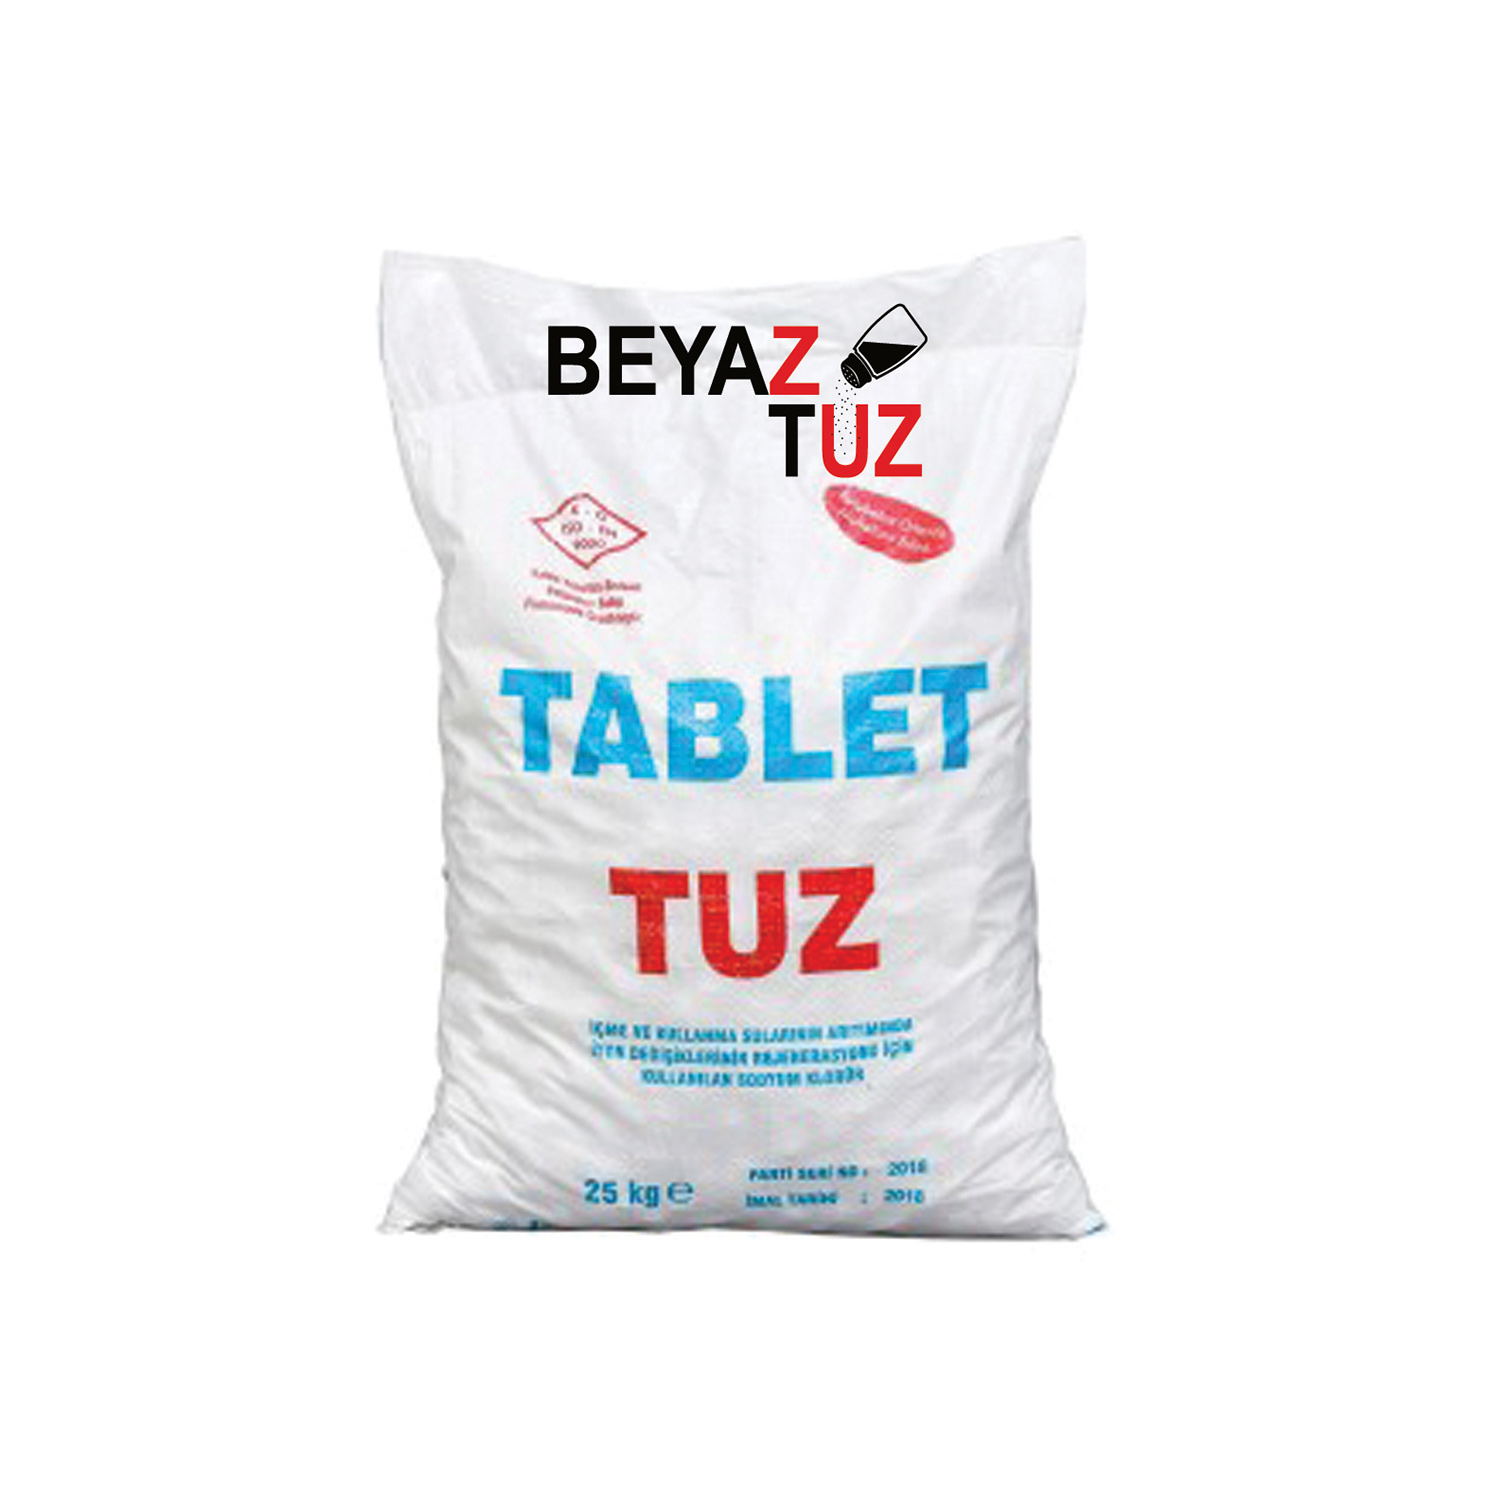  Arıtma Tuzu Tablet Tuz Sodyum Klorür 25 kg